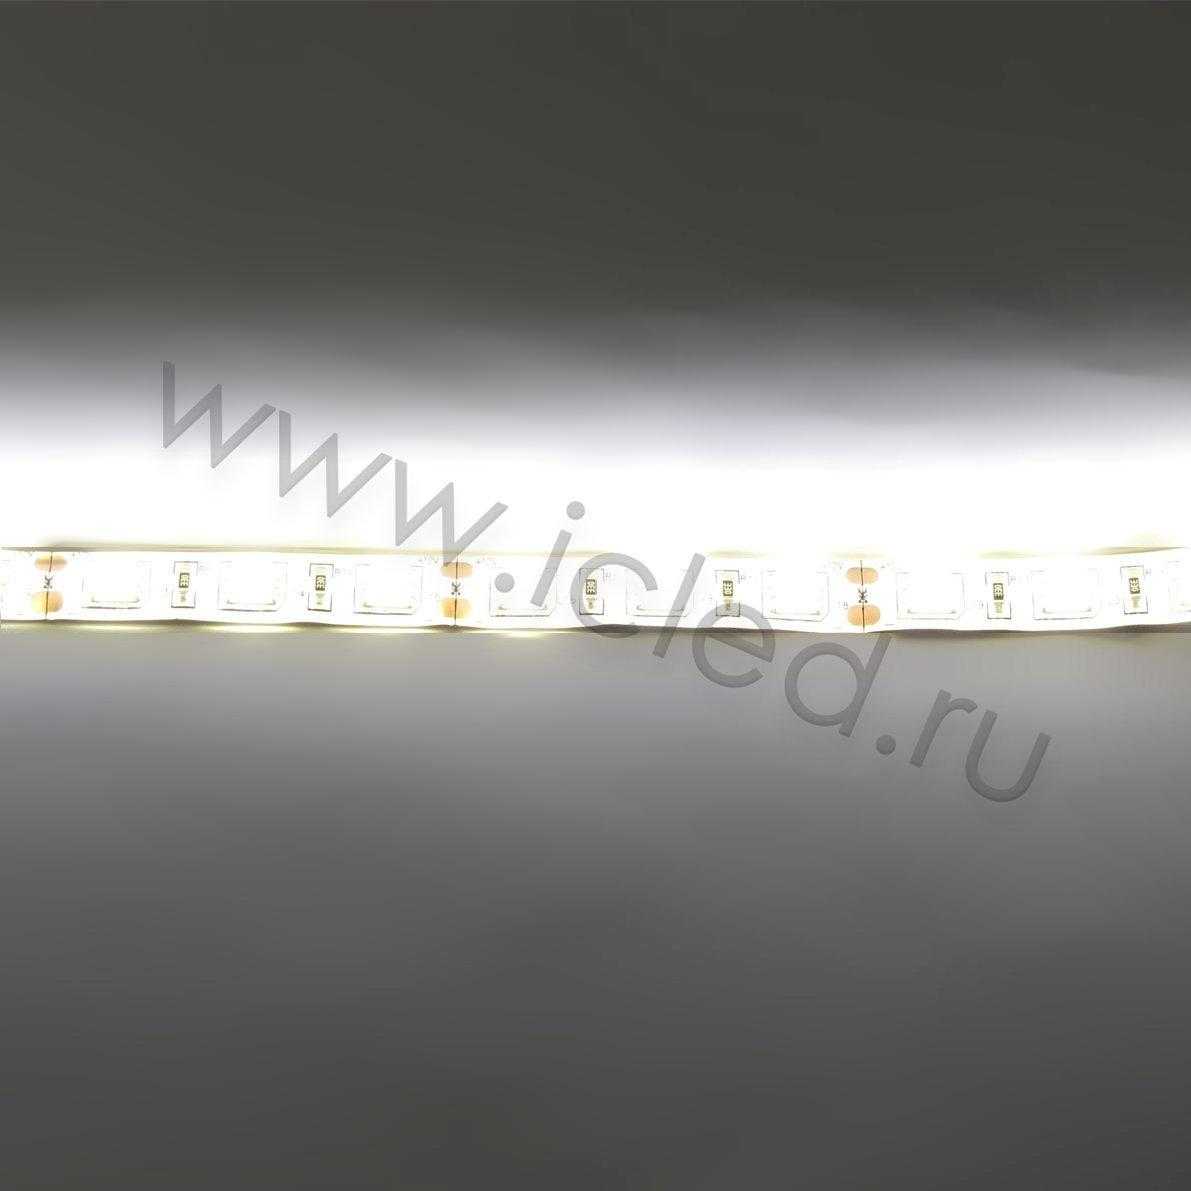 Влагозащищенные светодиодные ленты Светодиодная лента Class A, 5050, 60led/m, Warm White, 12V, IP65 Icled